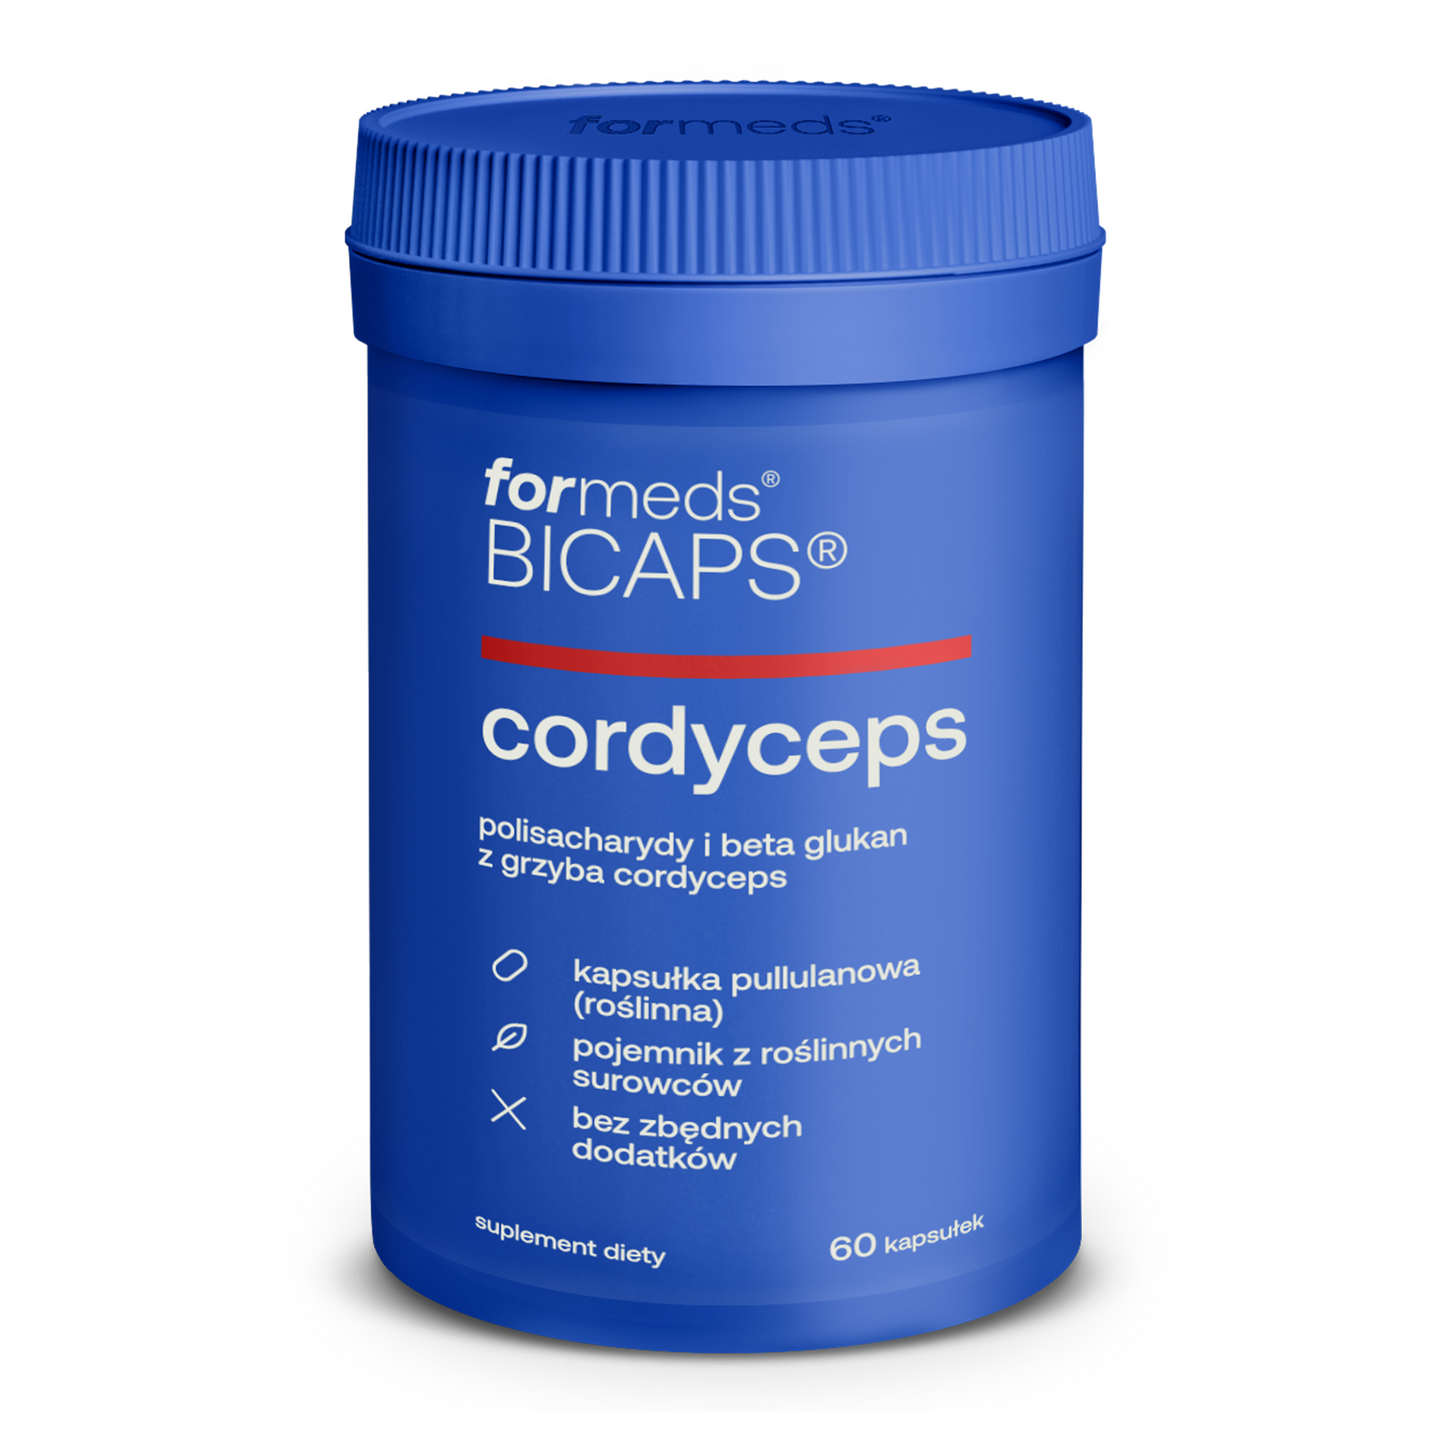 BICAPS Cordyceps - kordyceps chiński, tabletki, kapsułki